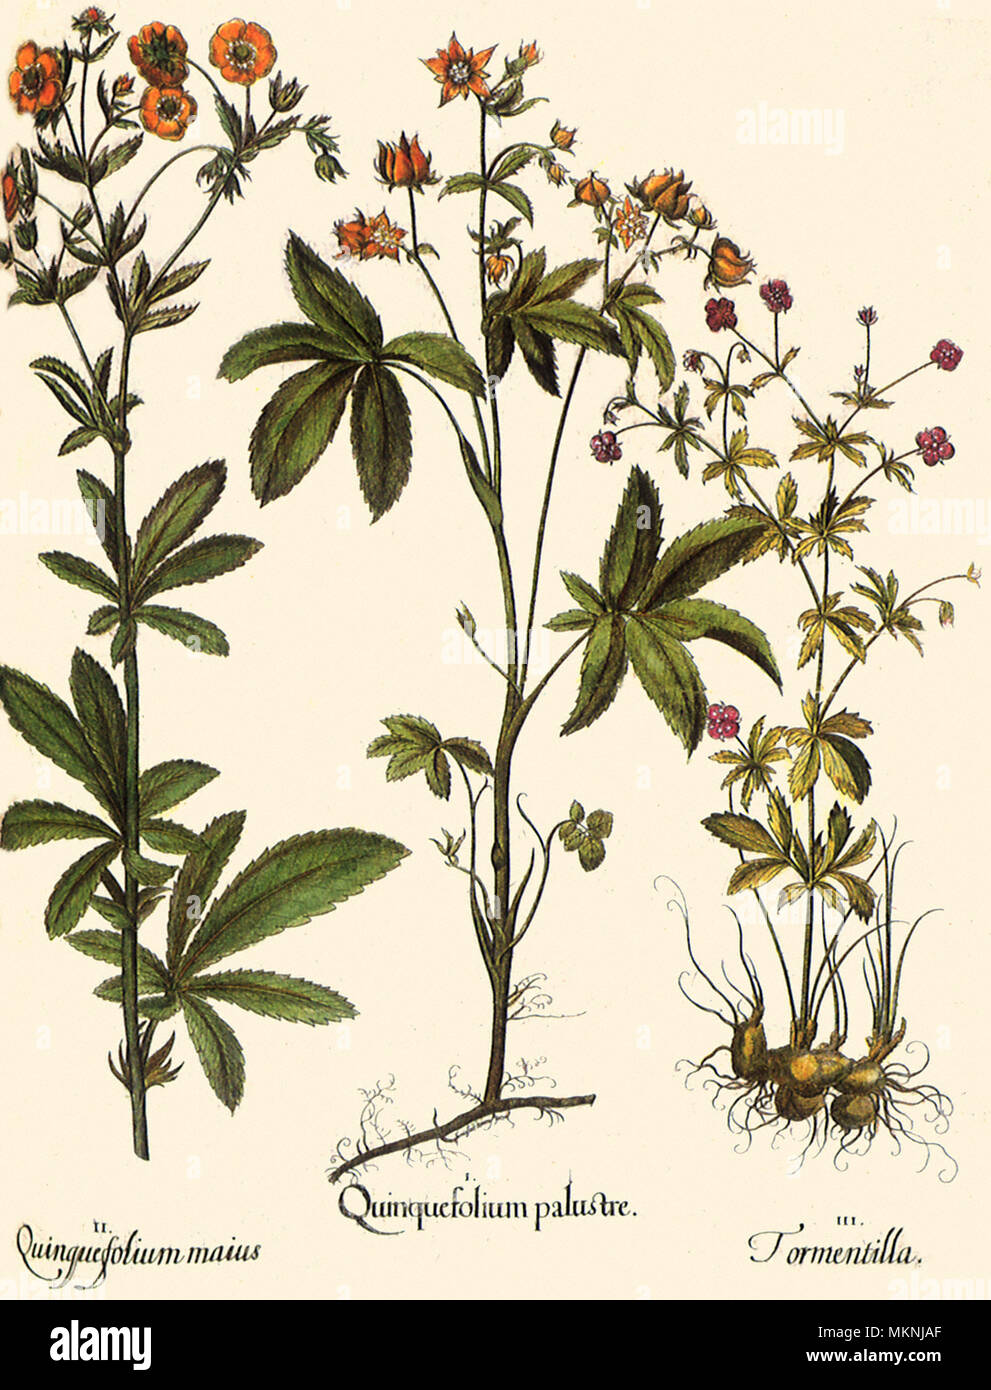 Potentilla palustris, Potentilla recta, Potentilla erecta Stock Photo